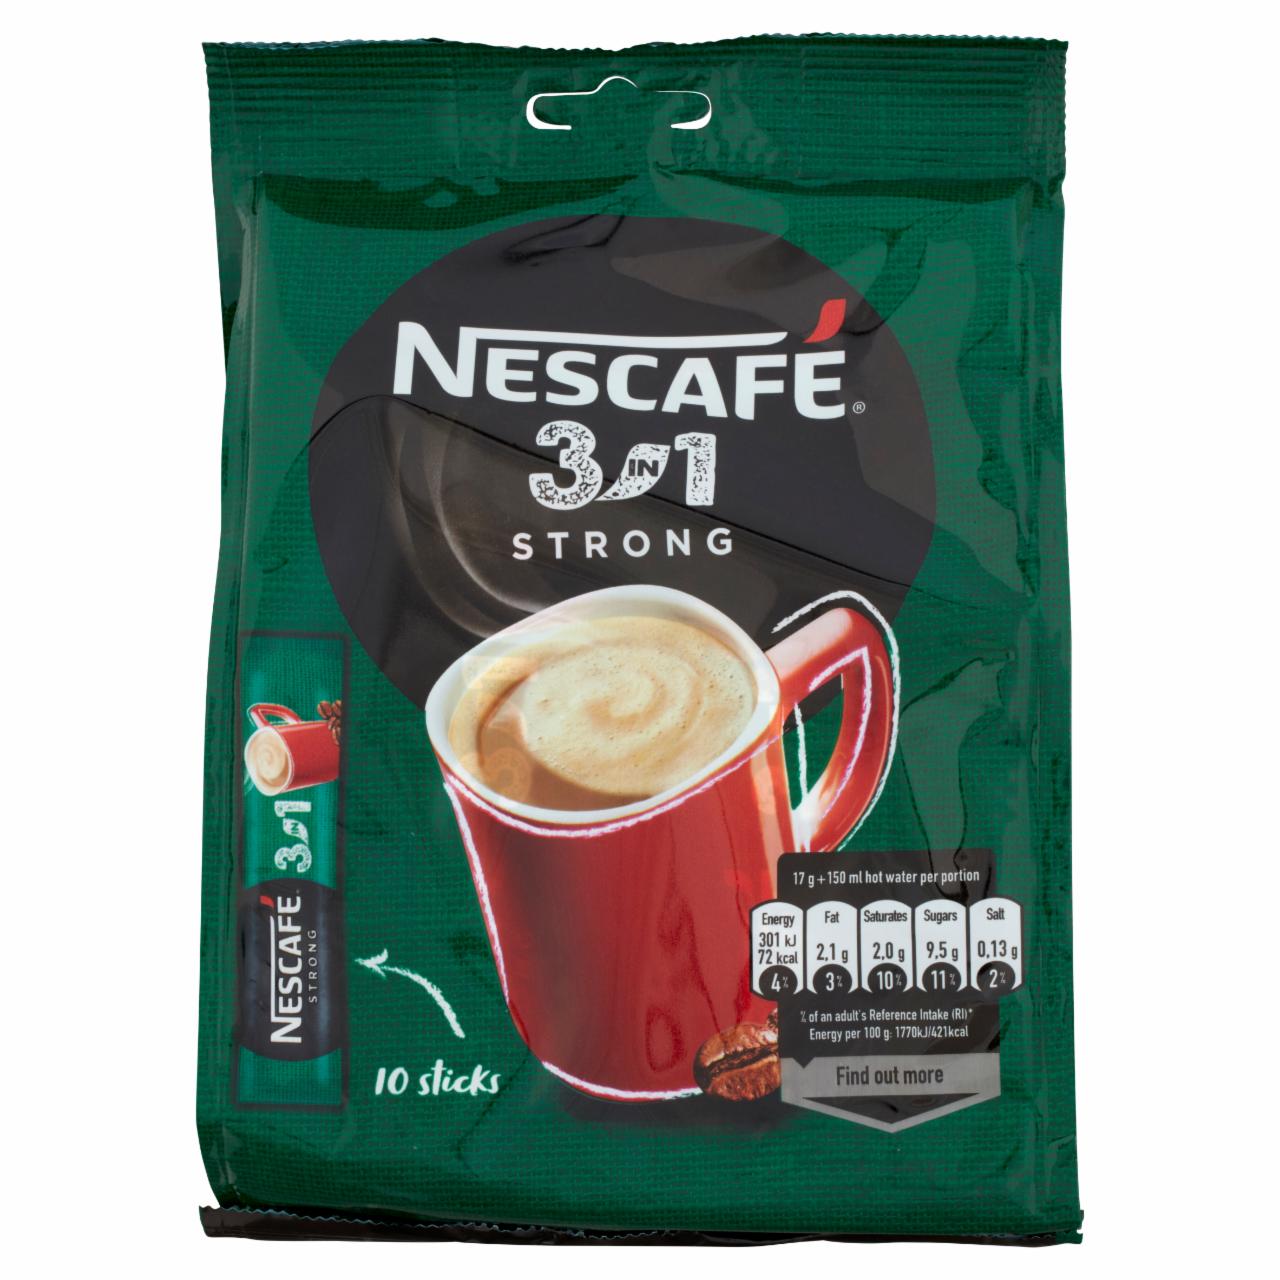 Képek - Nescafé 3in1 Strong azonnal oldódó kávéspecialitás 10 x 17 g (170 g)